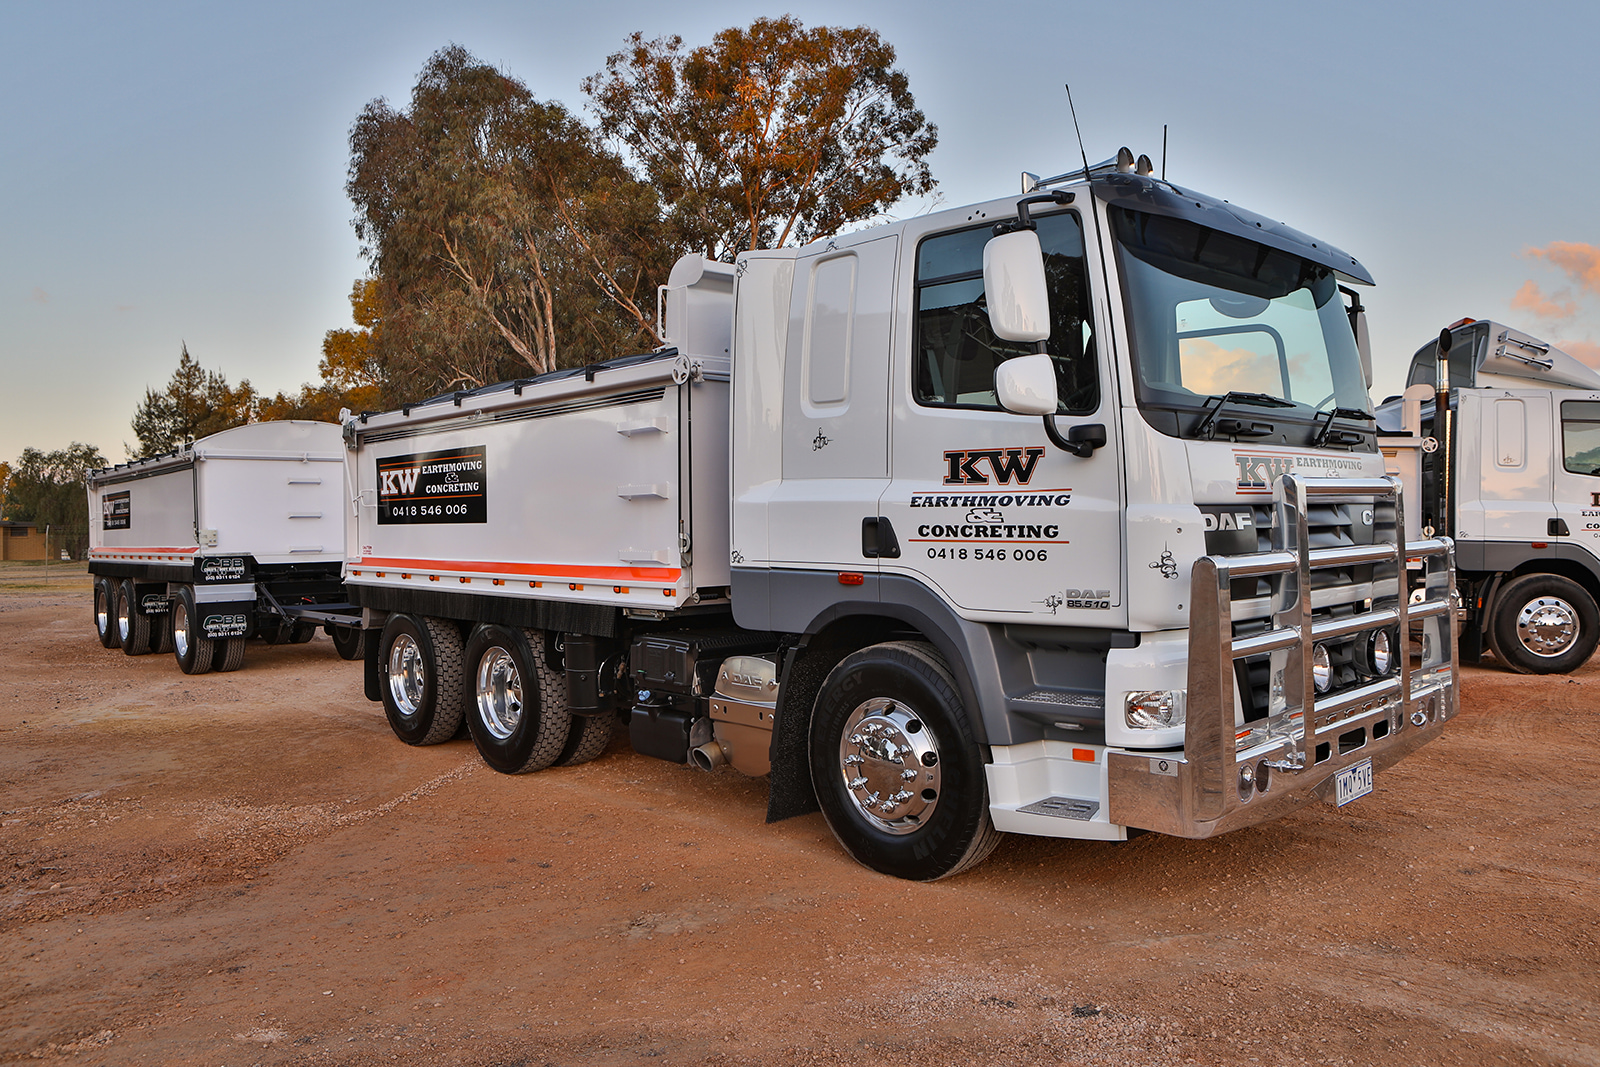 Truck Of The Week 33 Daf Trucks Australia